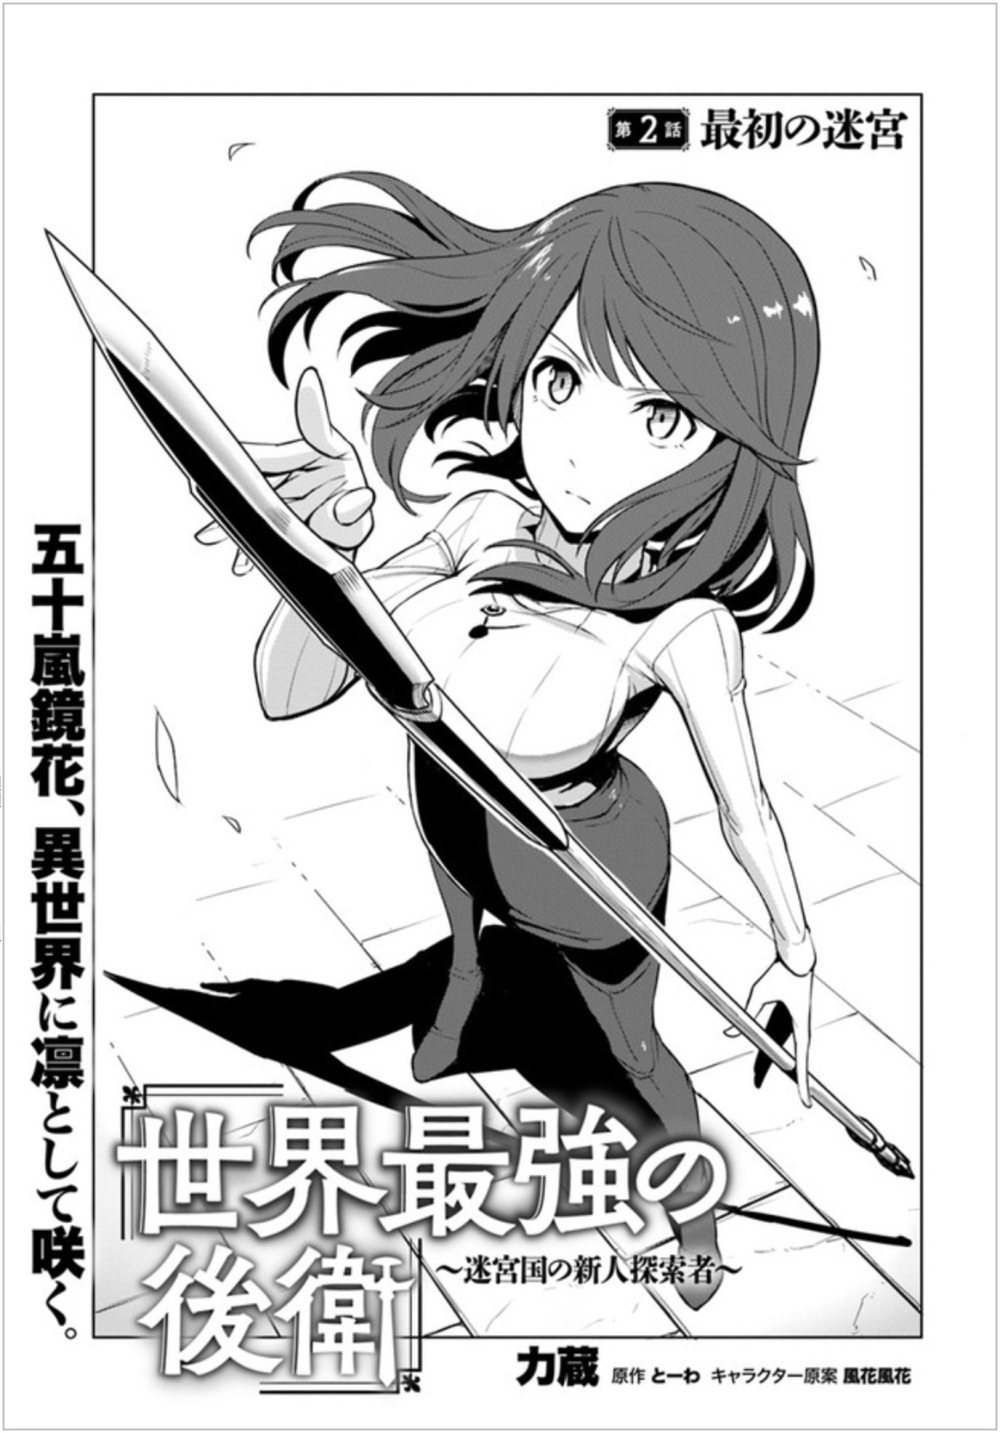 Sekai Saikyou no Kouei: Meikyuukoku no Shinjin Tansakusha chapter 2 page 1